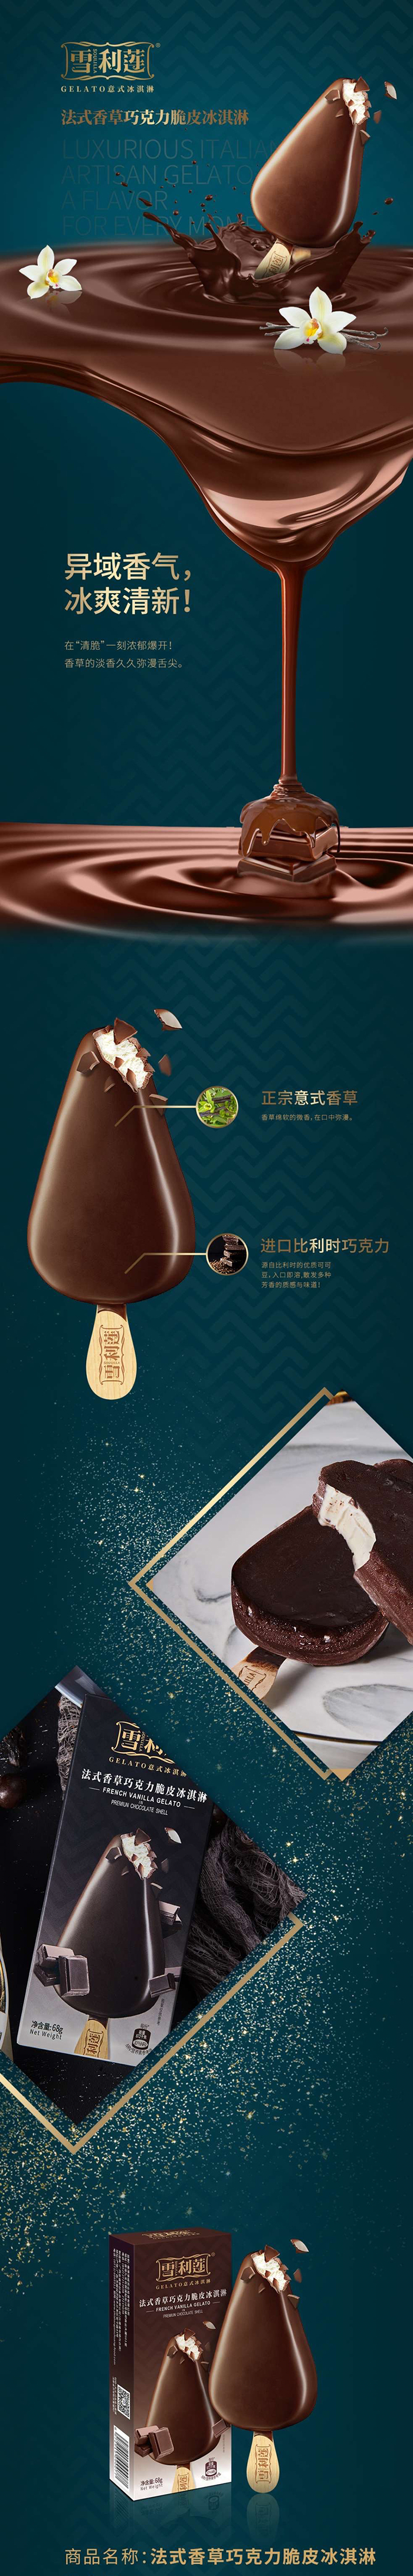 雪利莲 巧克力脆皮冰淇淋系列